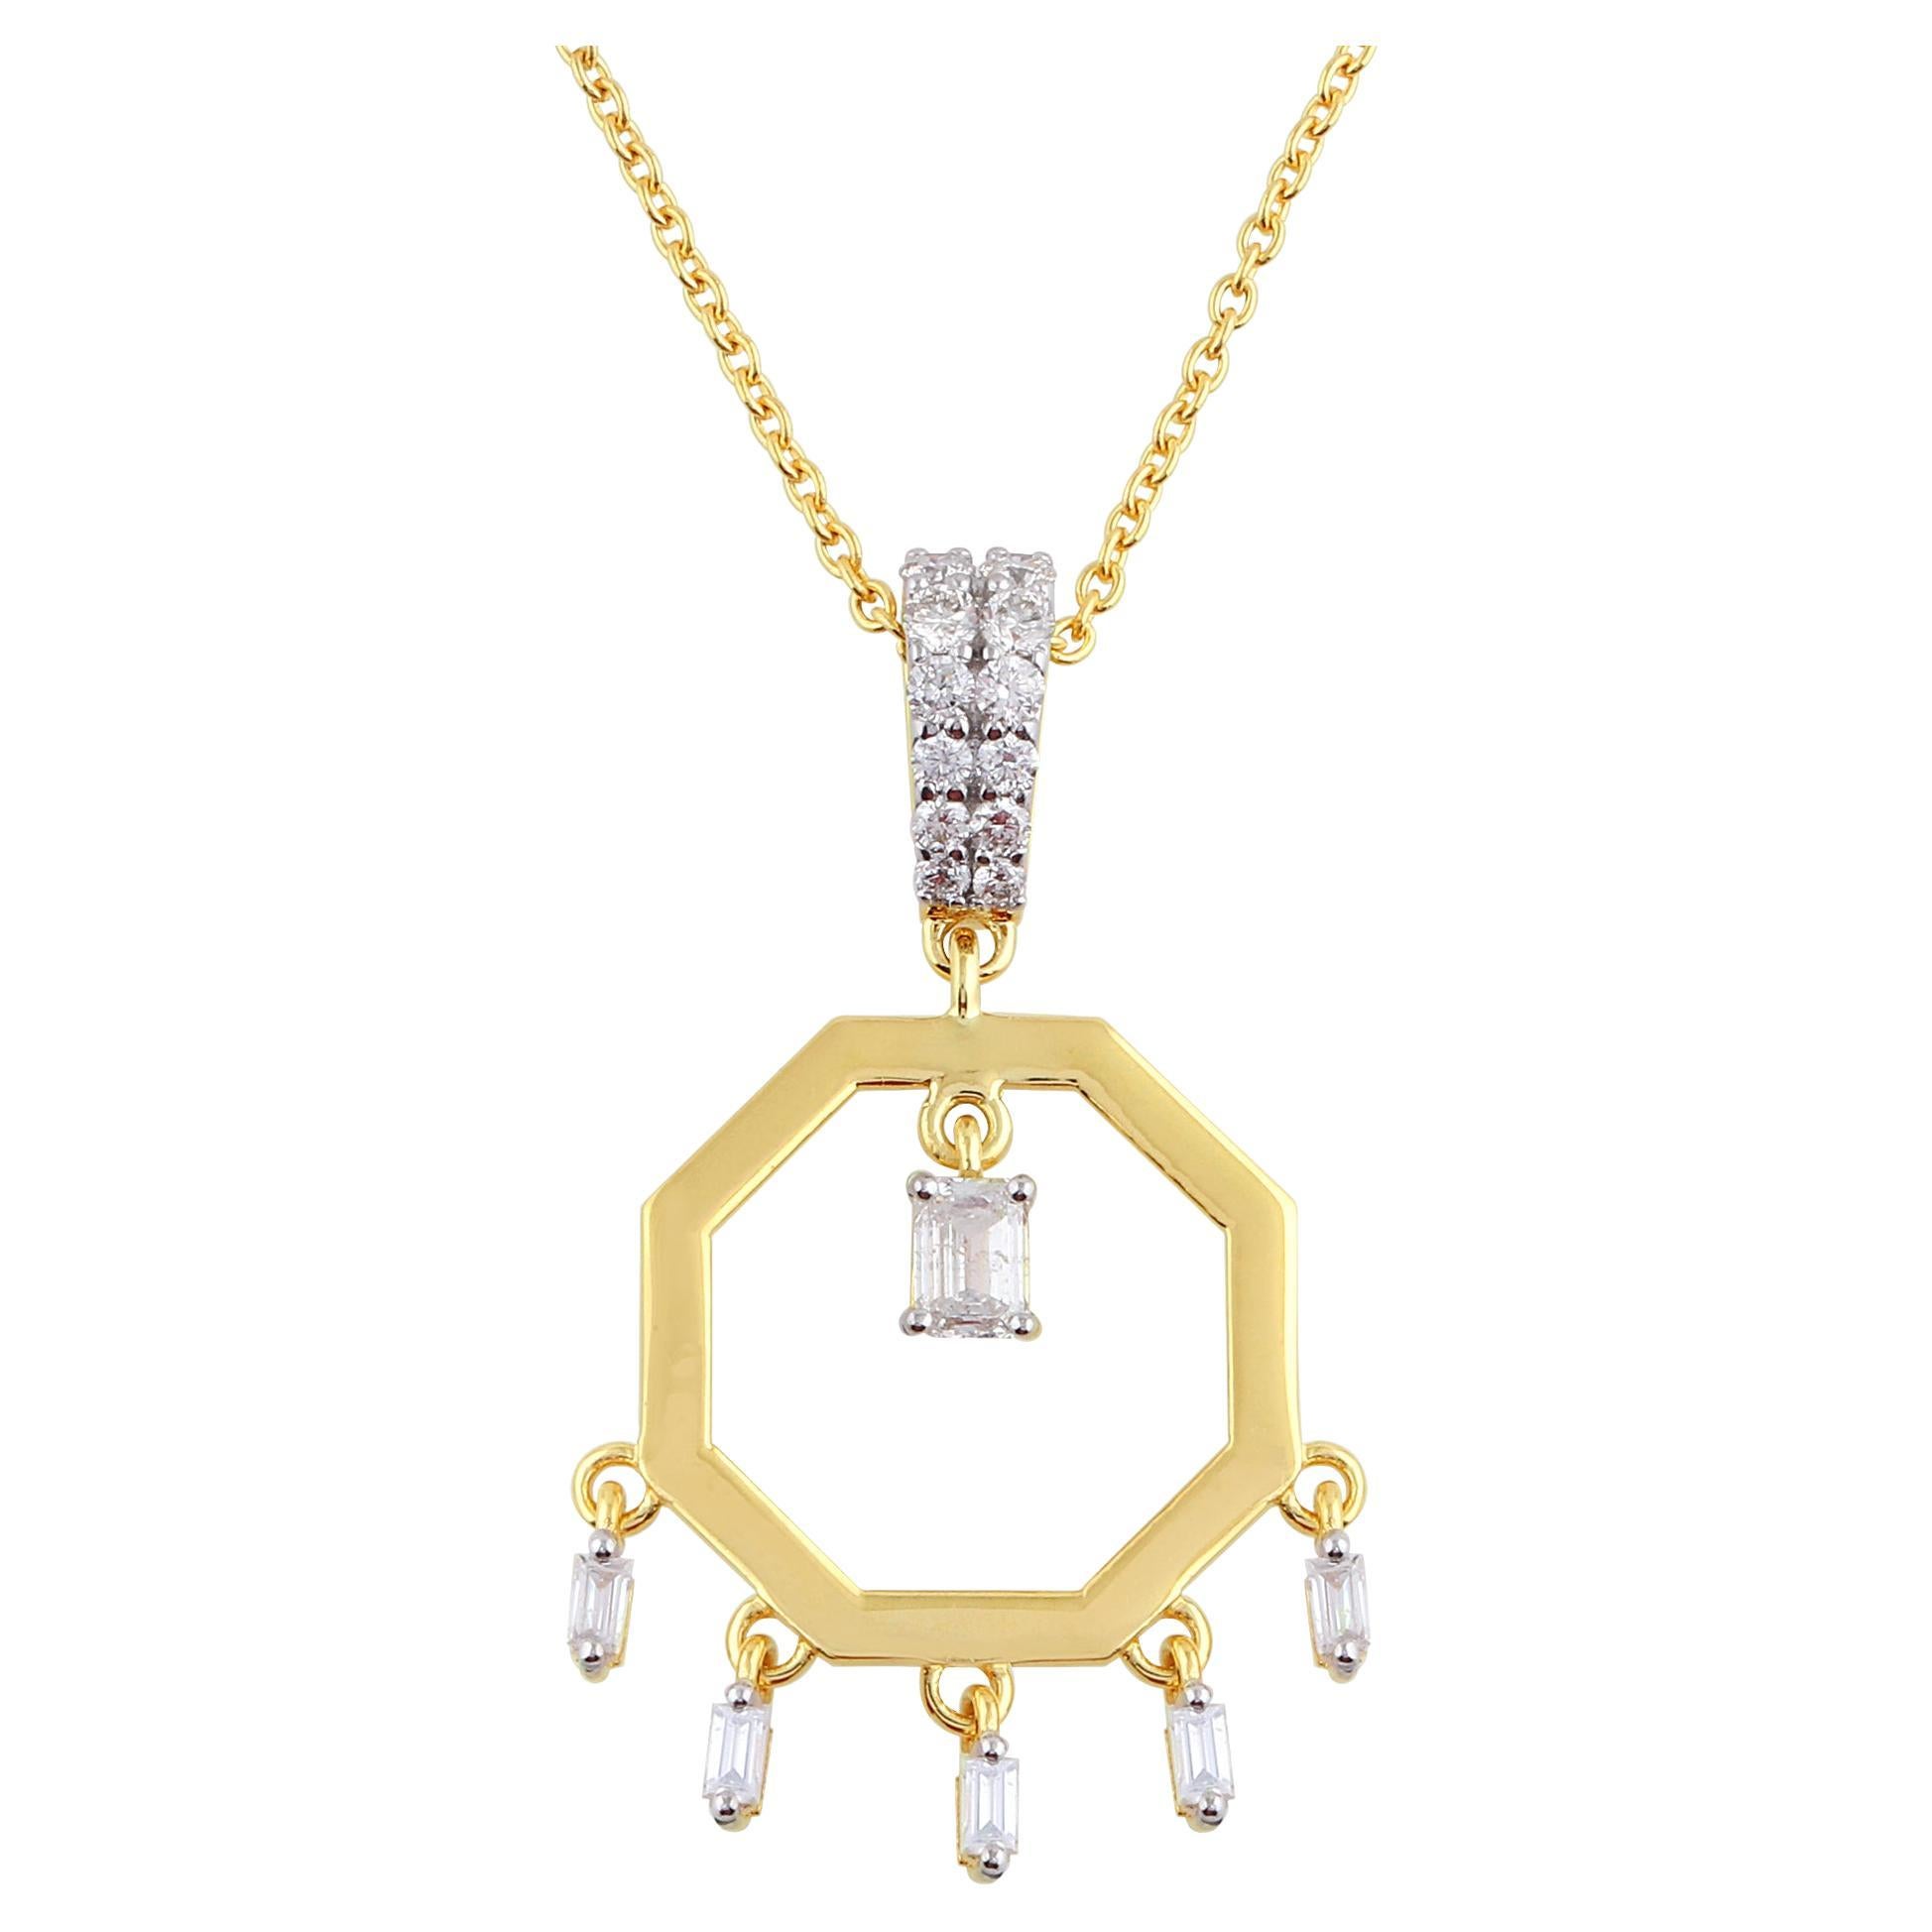 Collier pendentif breloque en or jaune 18 carats avec diamants baguettes, fabrication artisanale